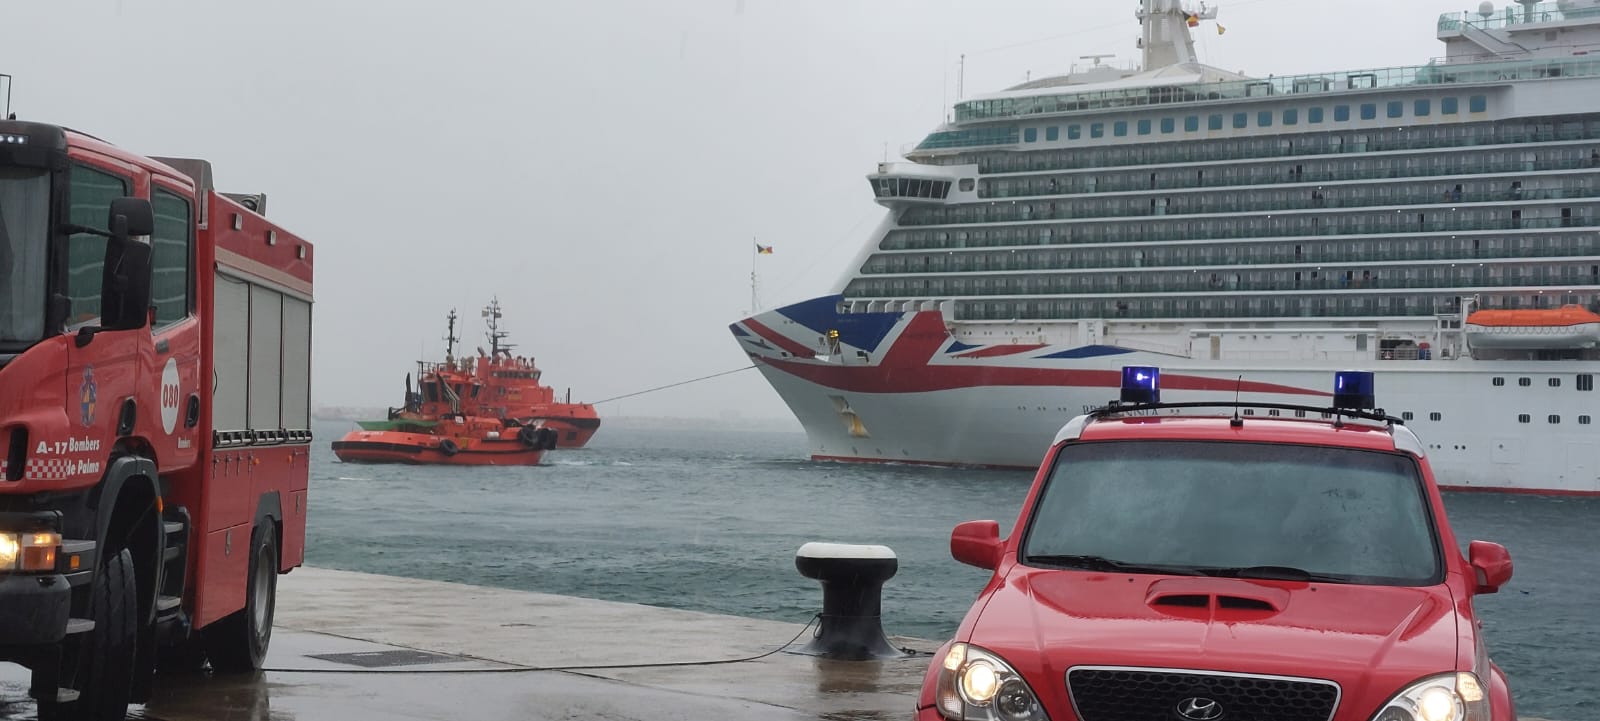 Un crucero rompe amarras en el puerto de Palma debido al fuerte viento e impacta con un petrolero atracado sin que se produzcan heridos